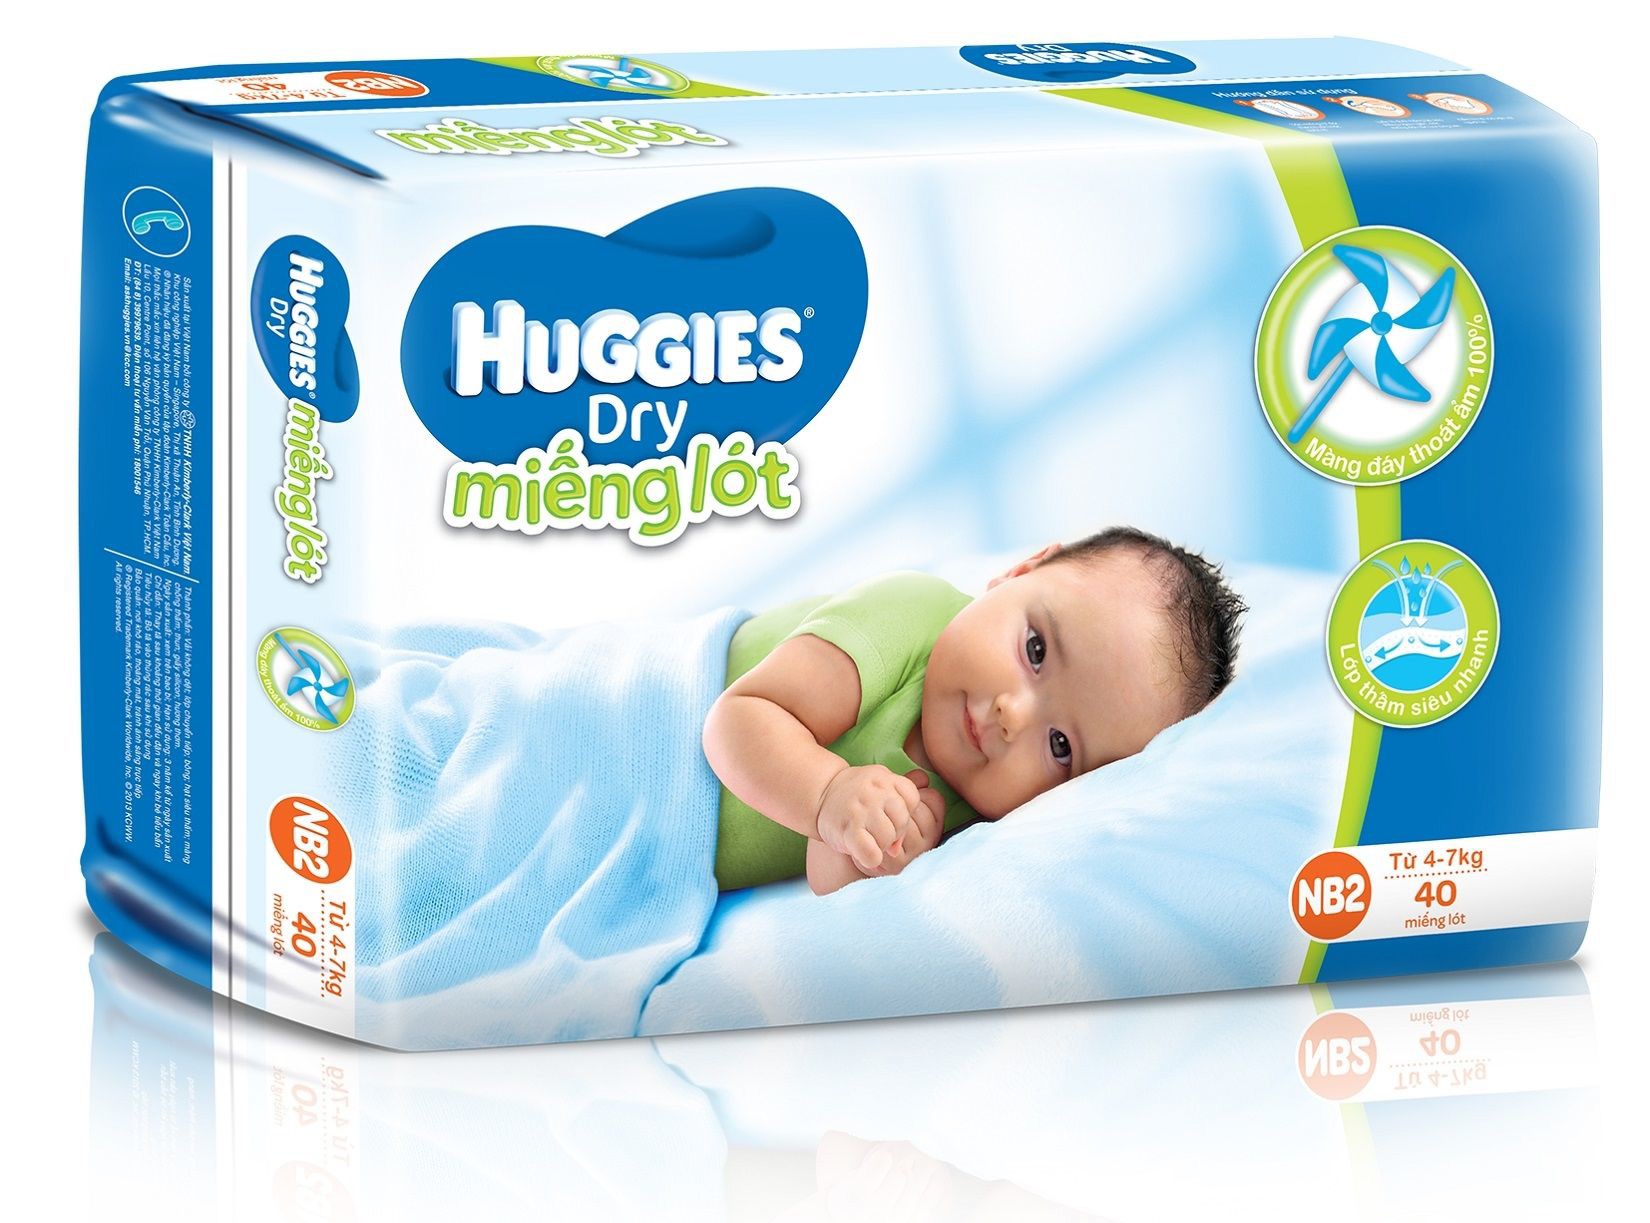 Miếng lót Huggies newborn 2 - 40 miếng/gói